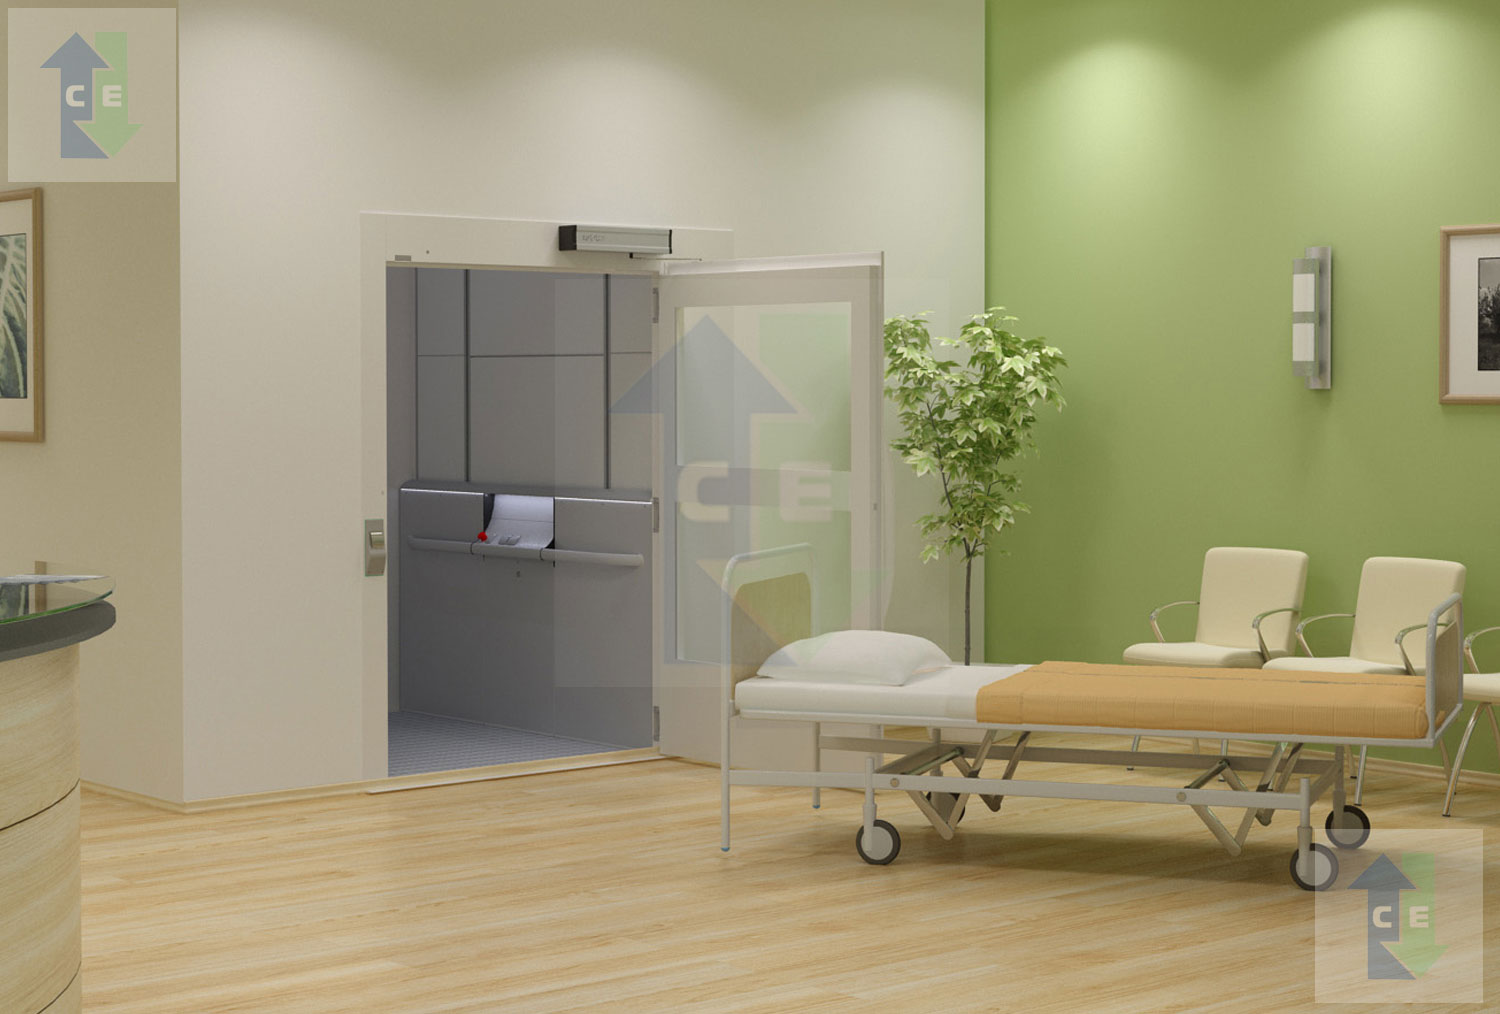 Comfort Elevators Pvt. Ltd. - Hospitals Lifts - Hospitals Lifts 001